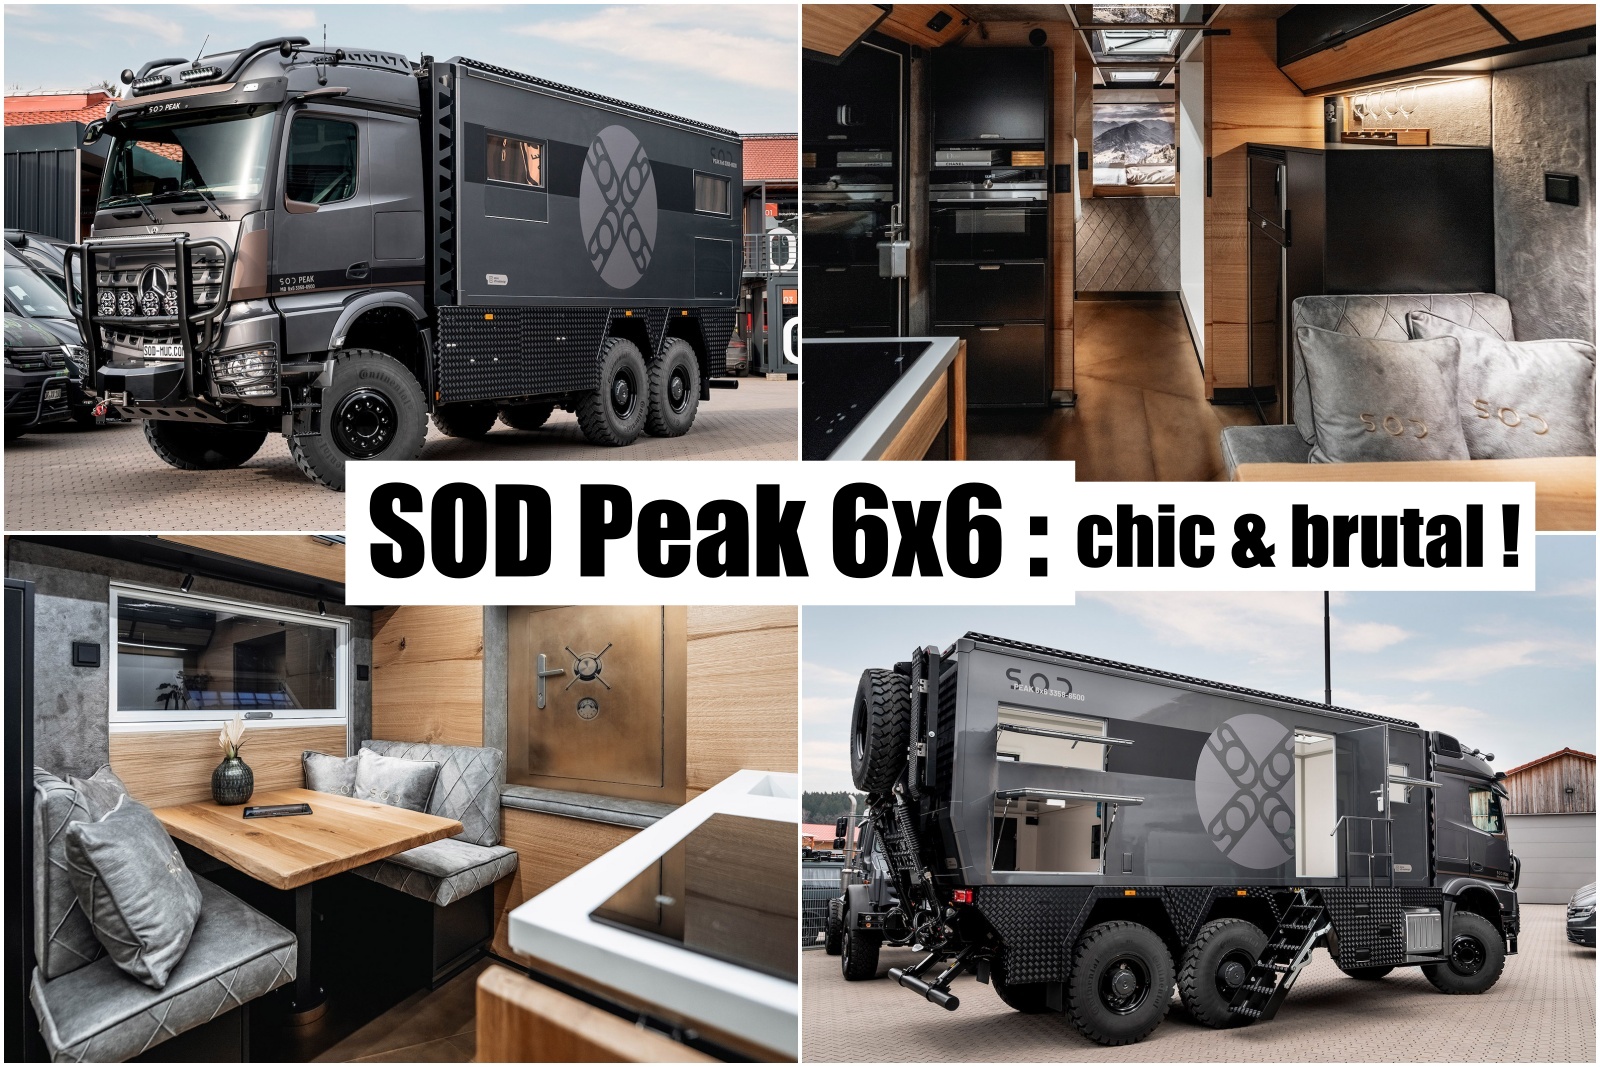 SOD Peak 6x6 : le camion aménagé de l'extrême !